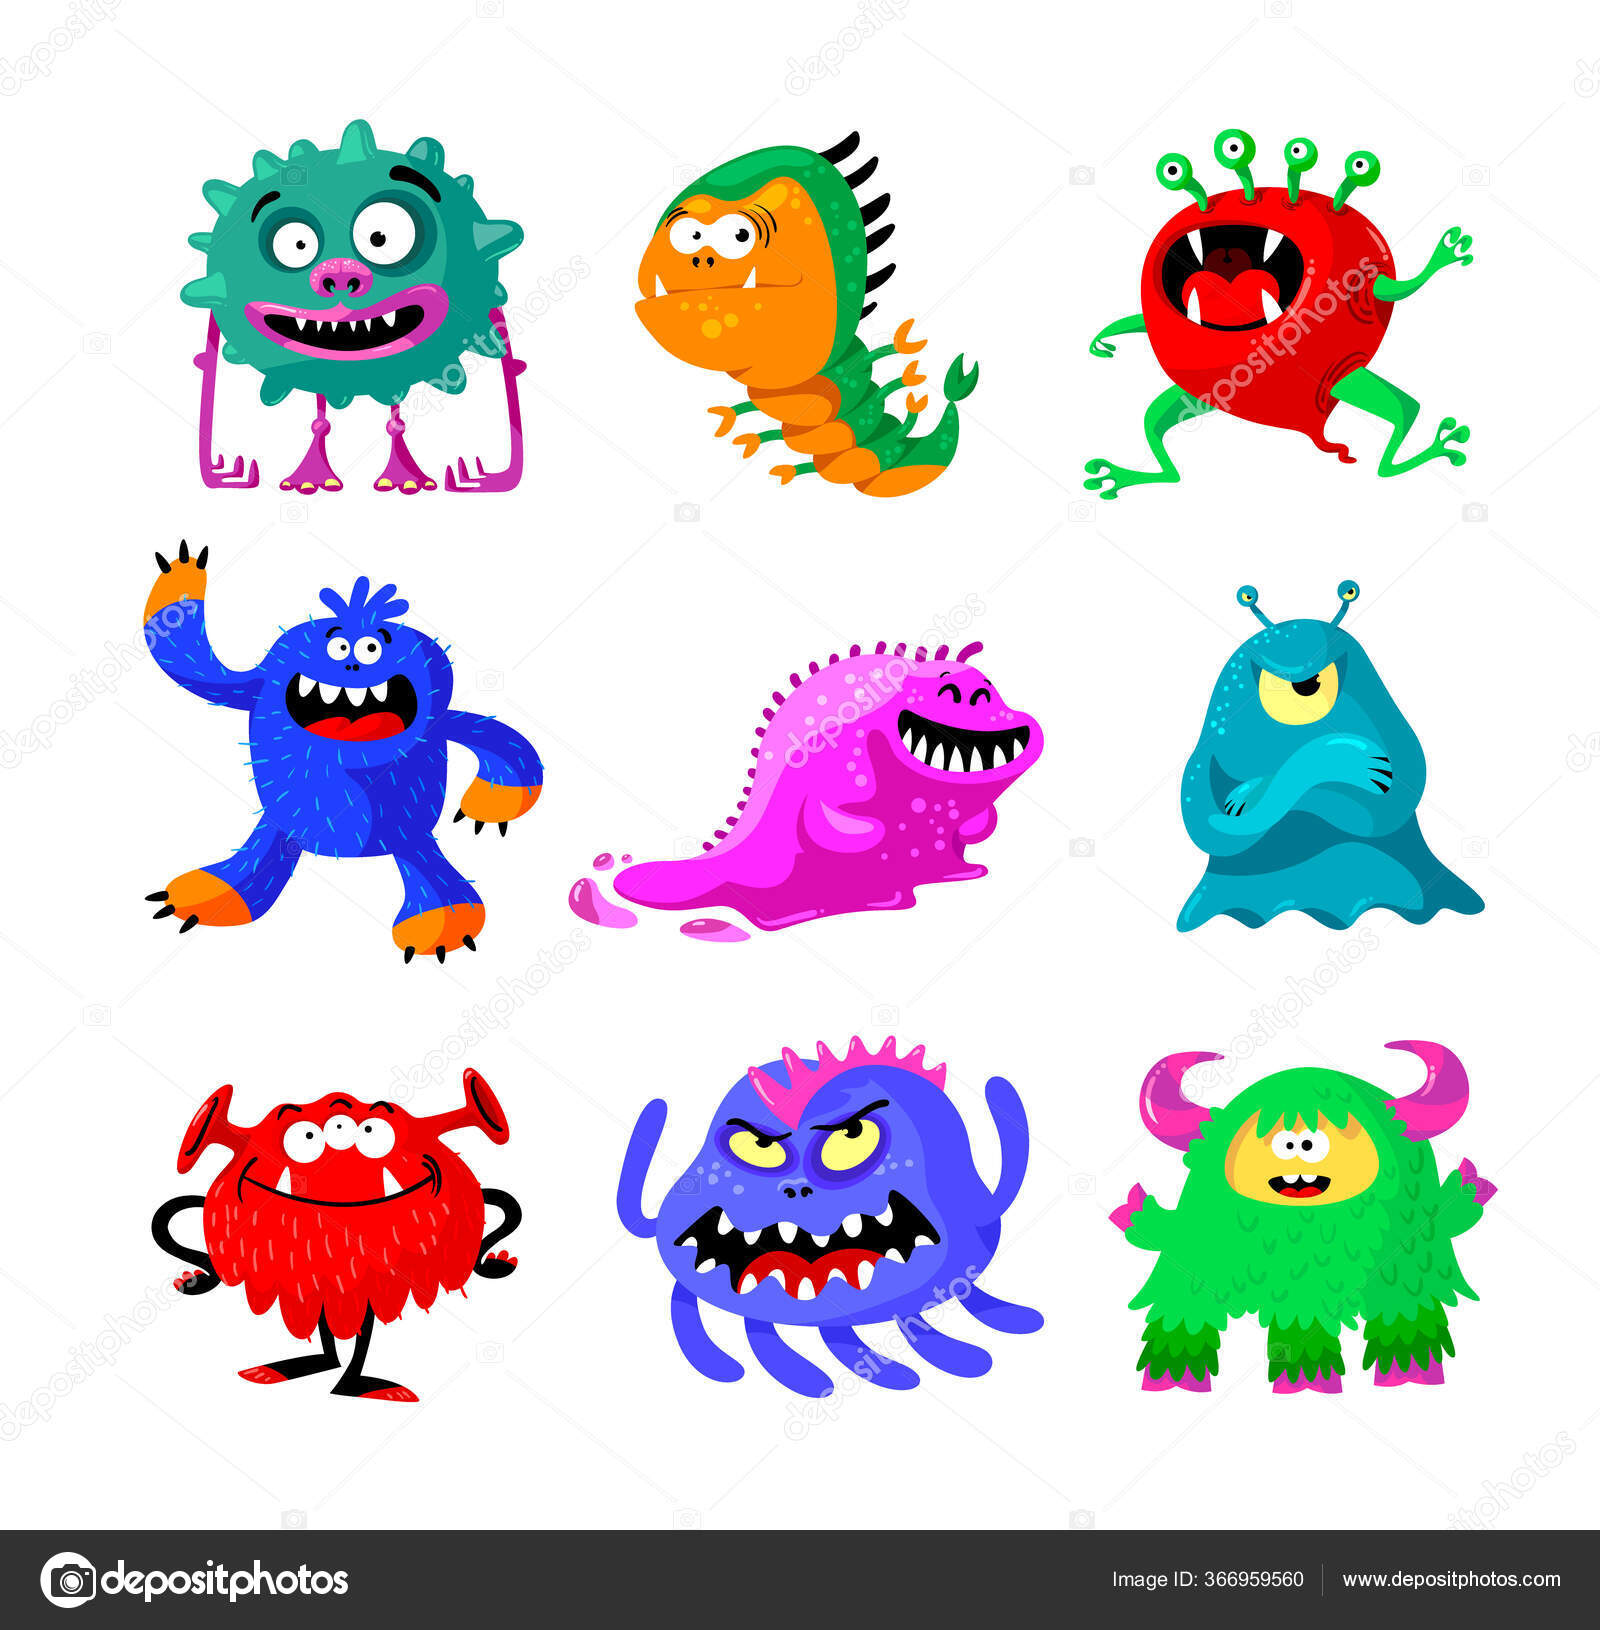 Desenhos animados engraçados roxo personagem monstro alienígena